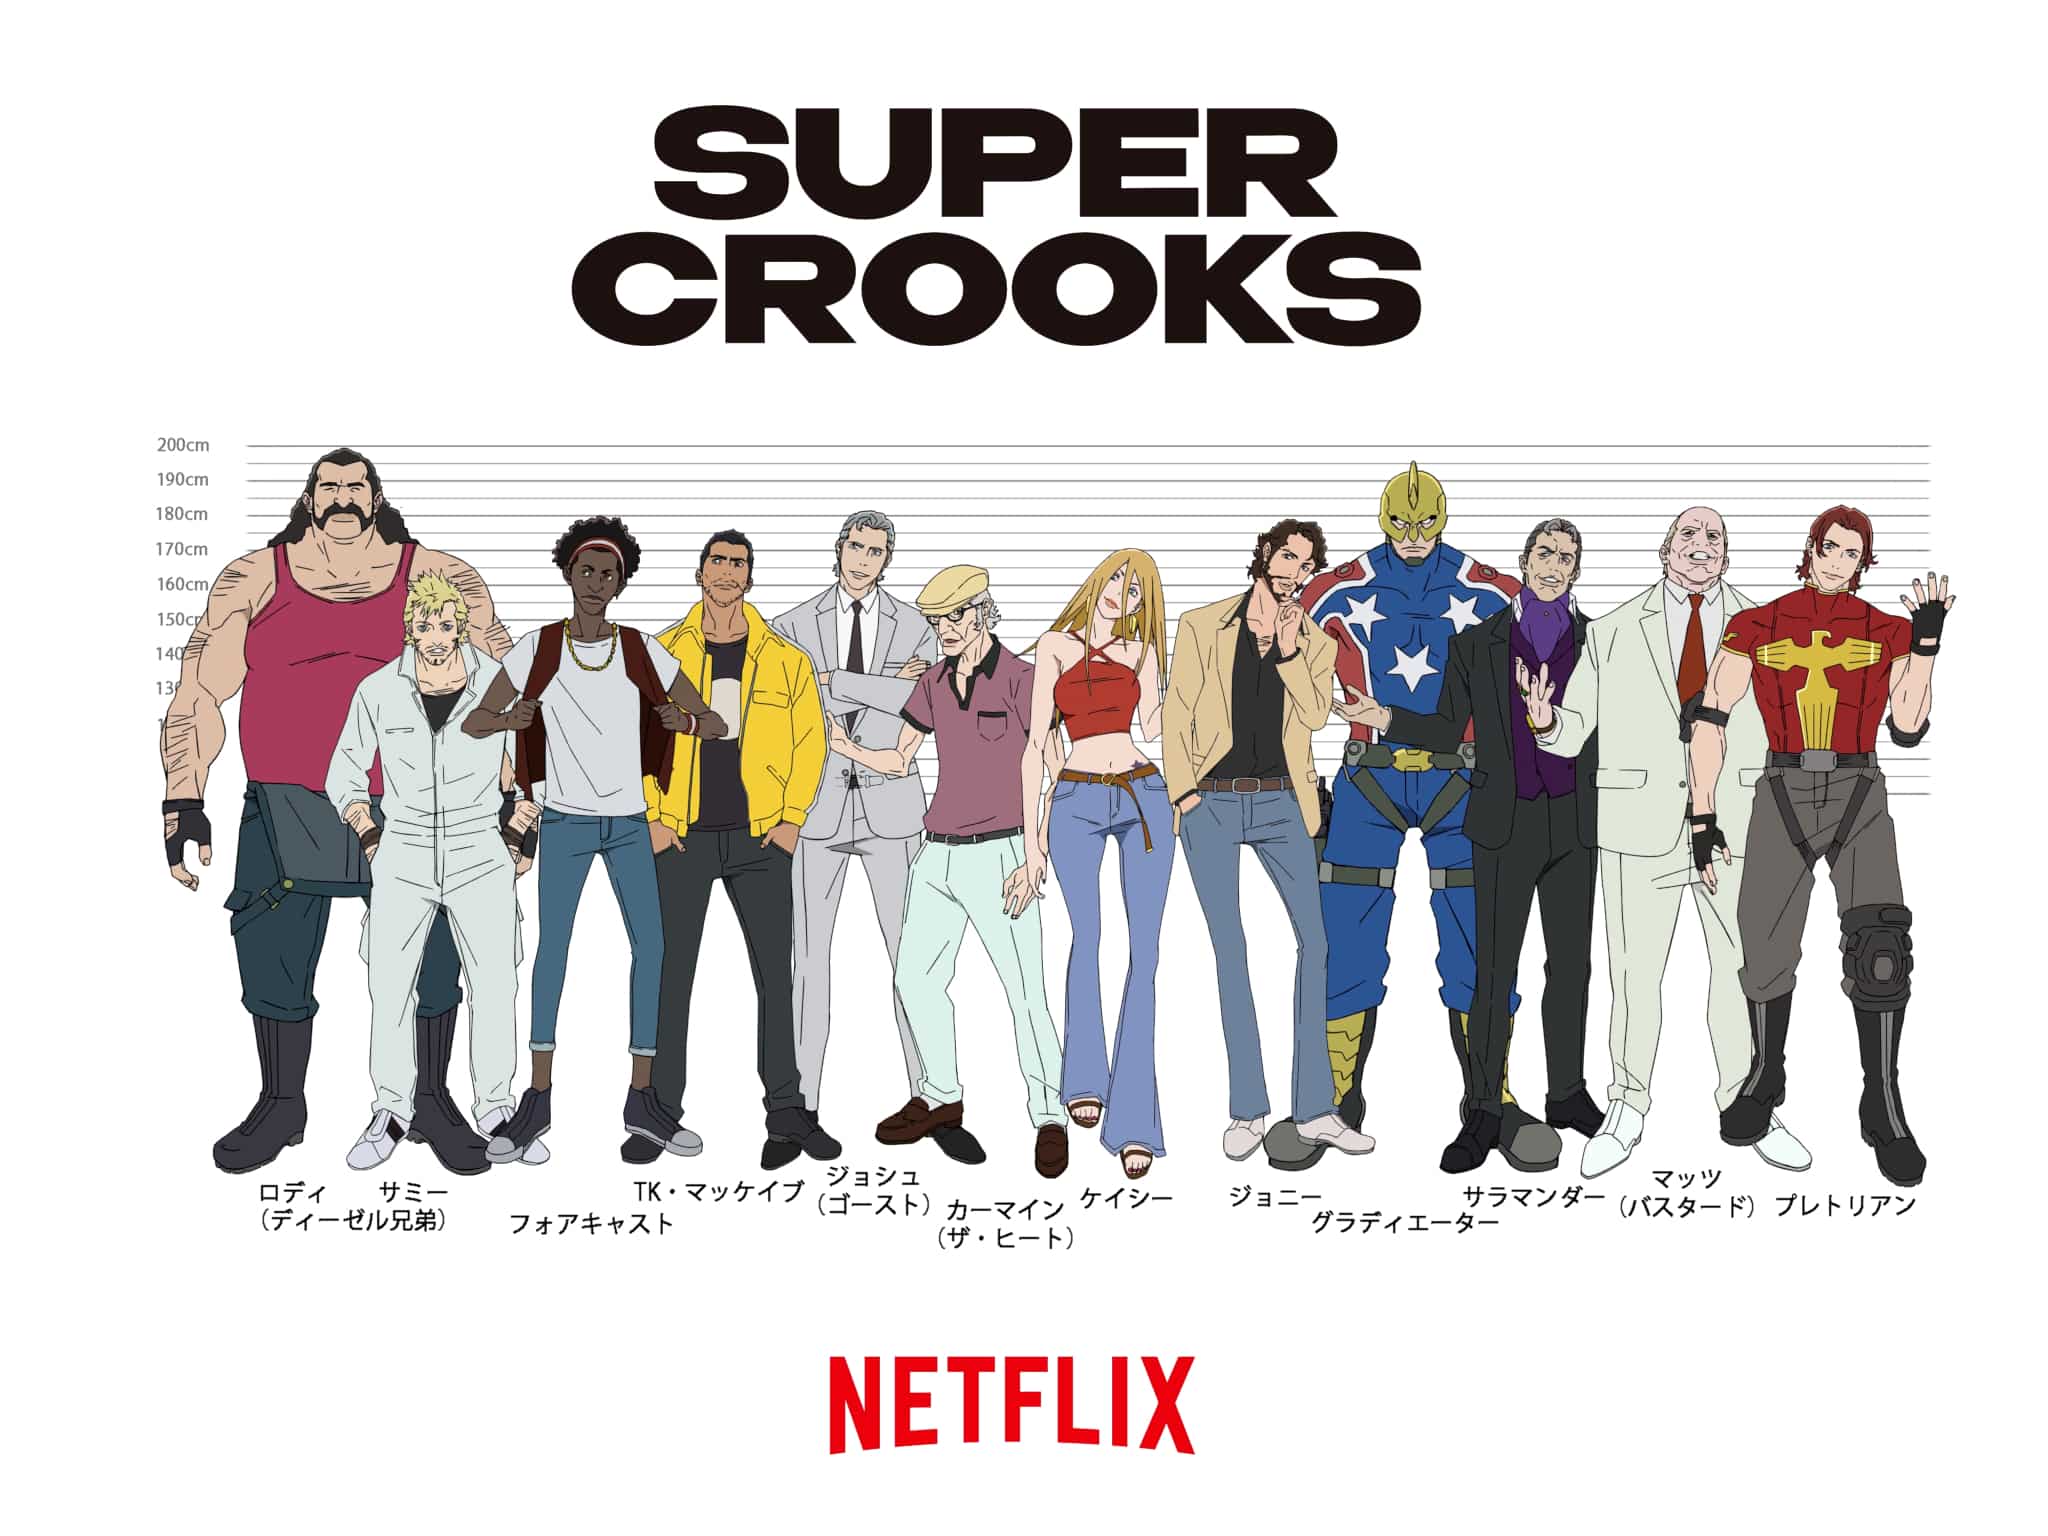 Nouveau visuel pour l'anime netflix Super Crooks